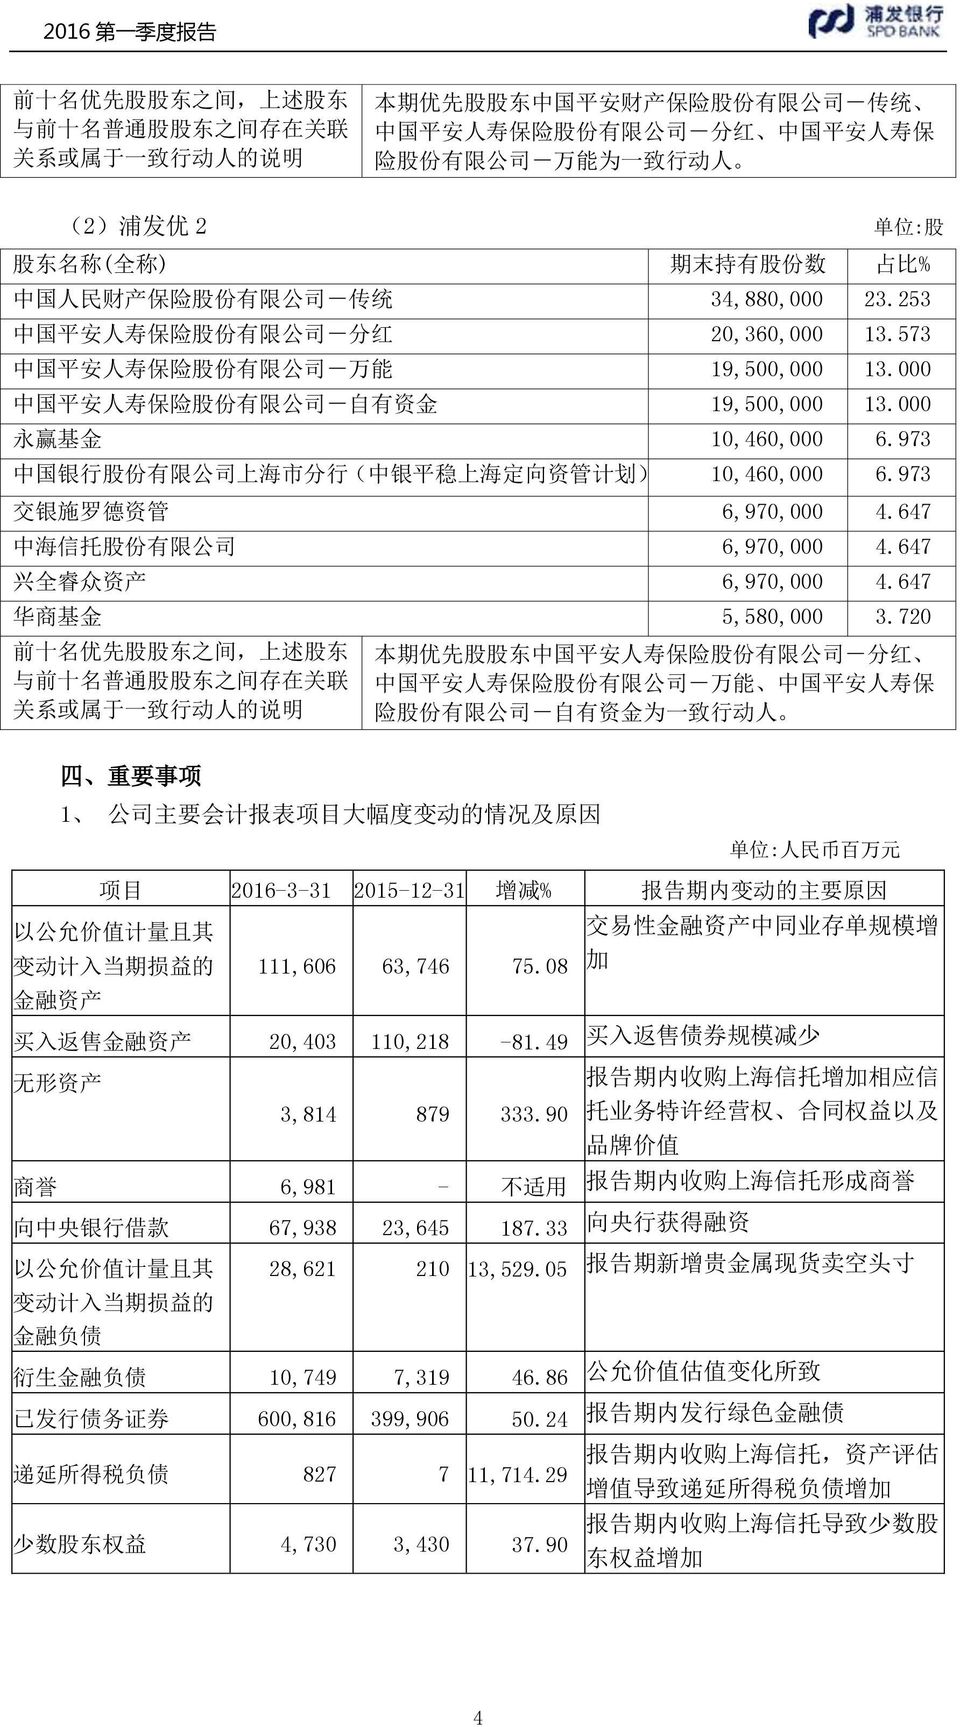 573 中 国 平 安 人 寿 保 险 股 份 有 限 公 司 - 万 能 19,500,000 13.000 中 国 平 安 人 寿 保 险 股 份 有 限 公 司 - 自 有 资 金 19,500,000 13.000 永 赢 基 金 10,460,000 6.